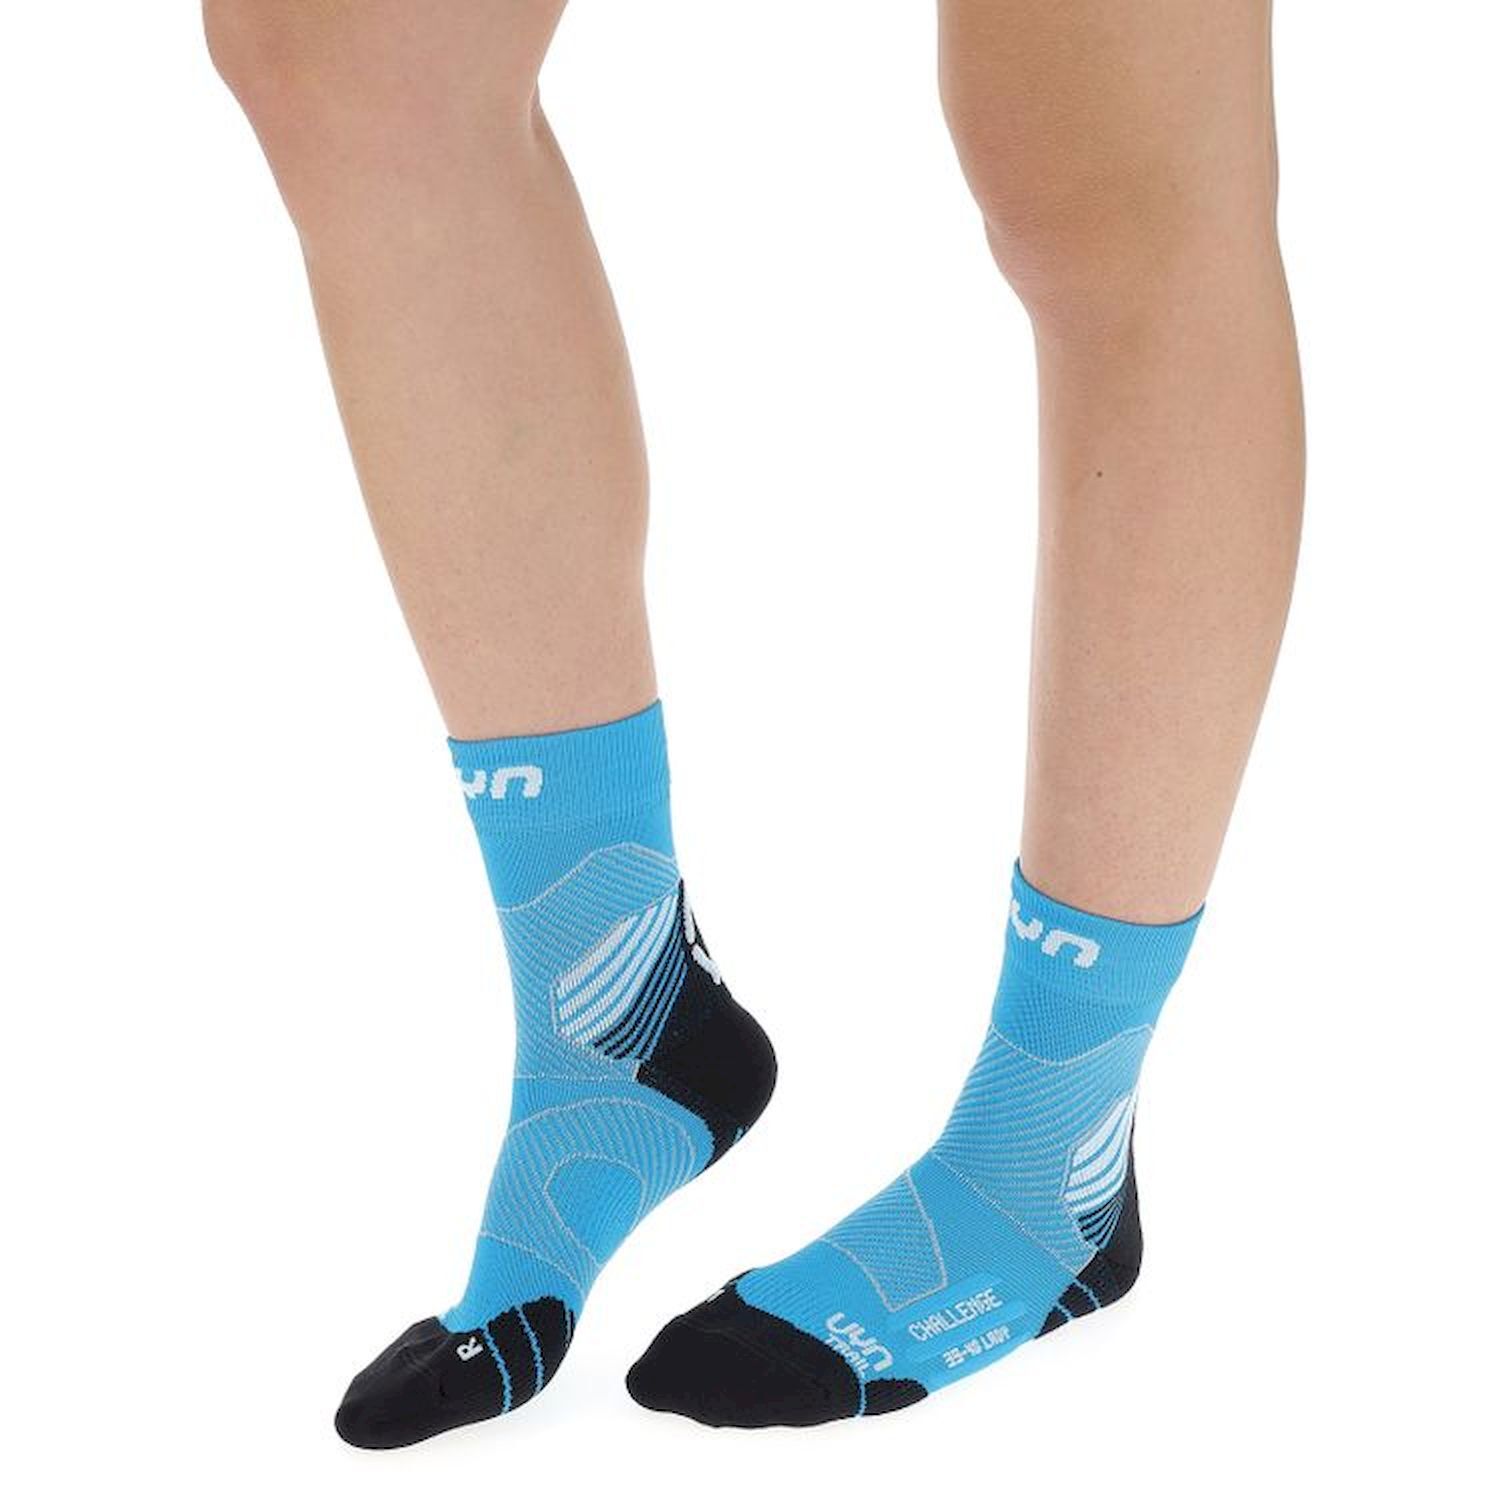 Uyn Run Trail Challenge Socks - Calze trail running - Donna